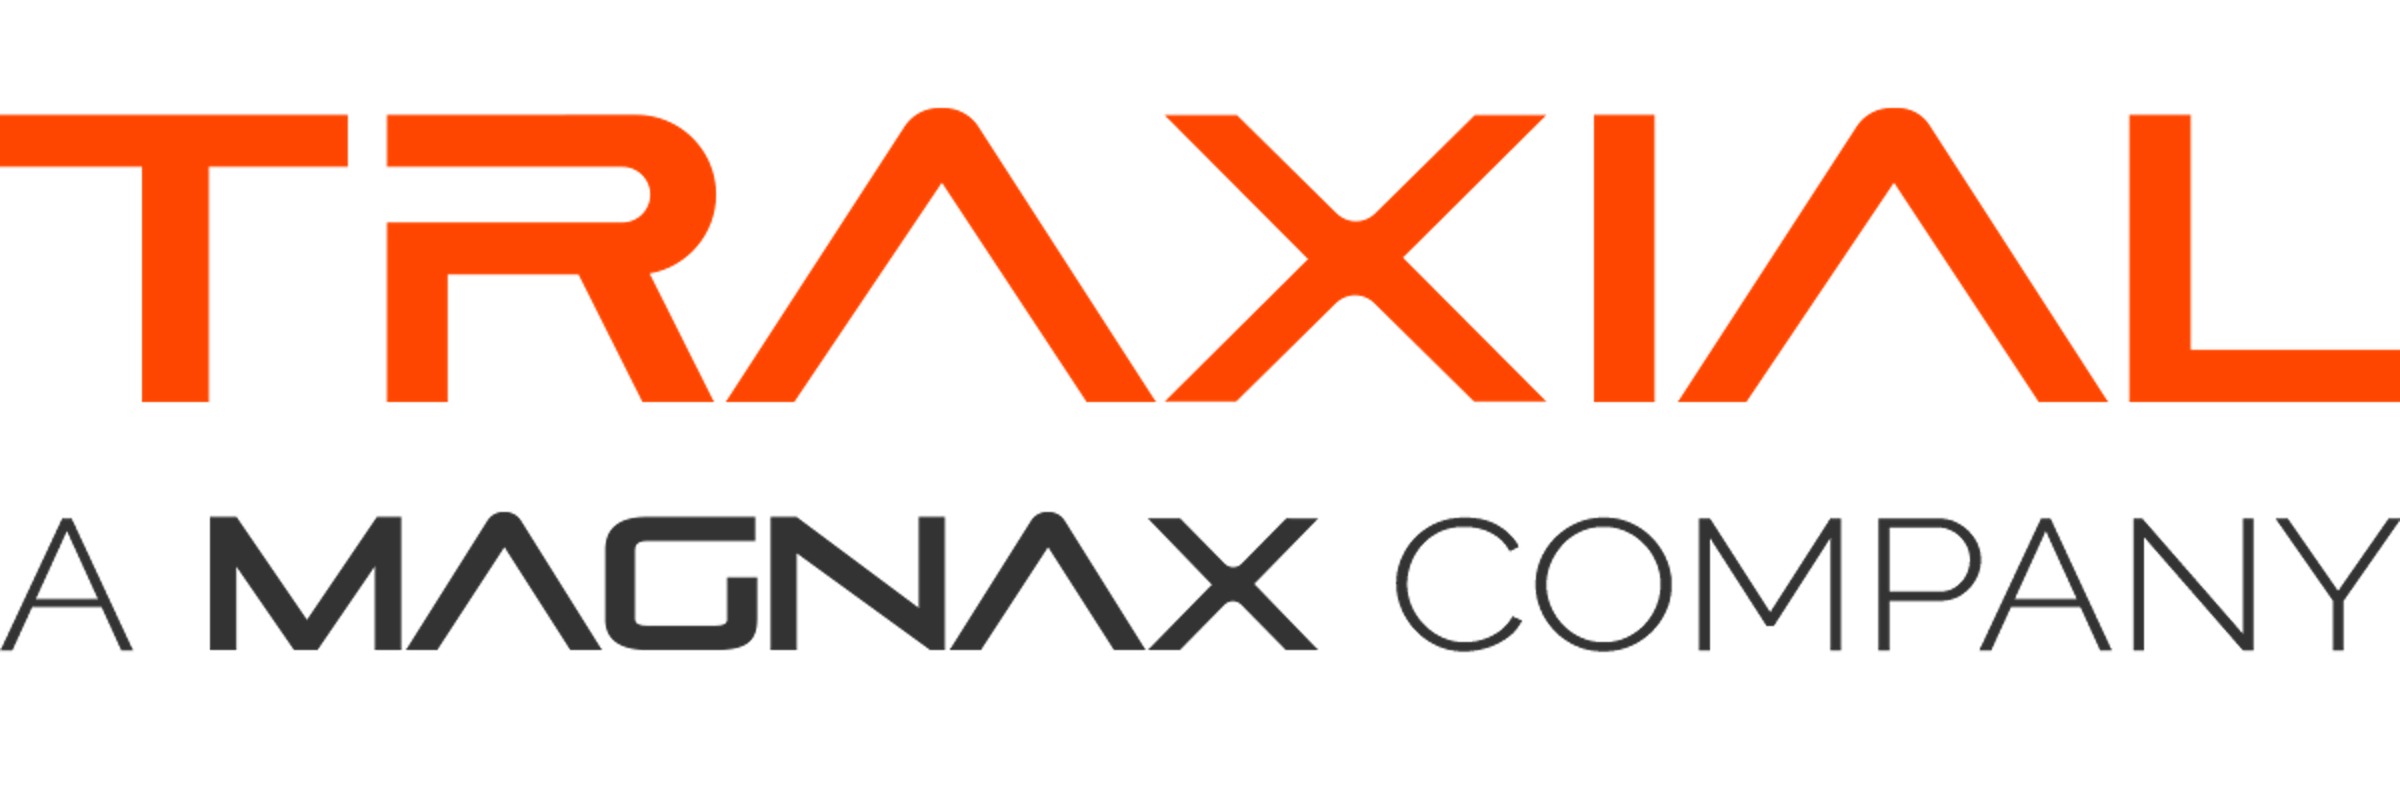 Traxial (a Magnax company) logo